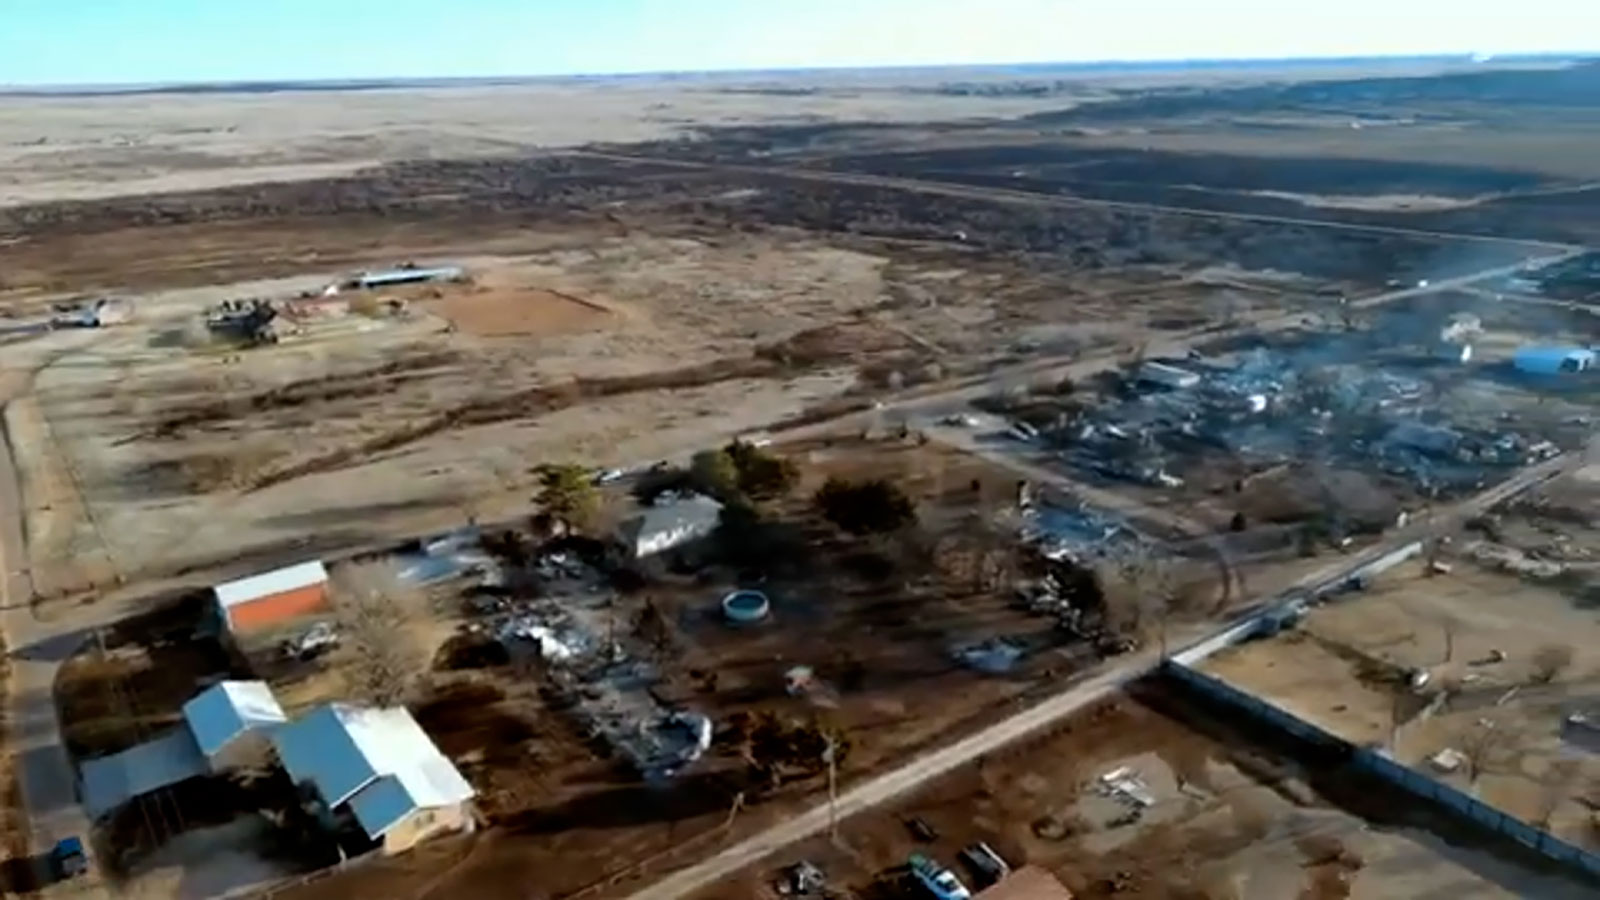 Drone footage taken by Allen Garland shows damaged structures in Stinnett, Texas.